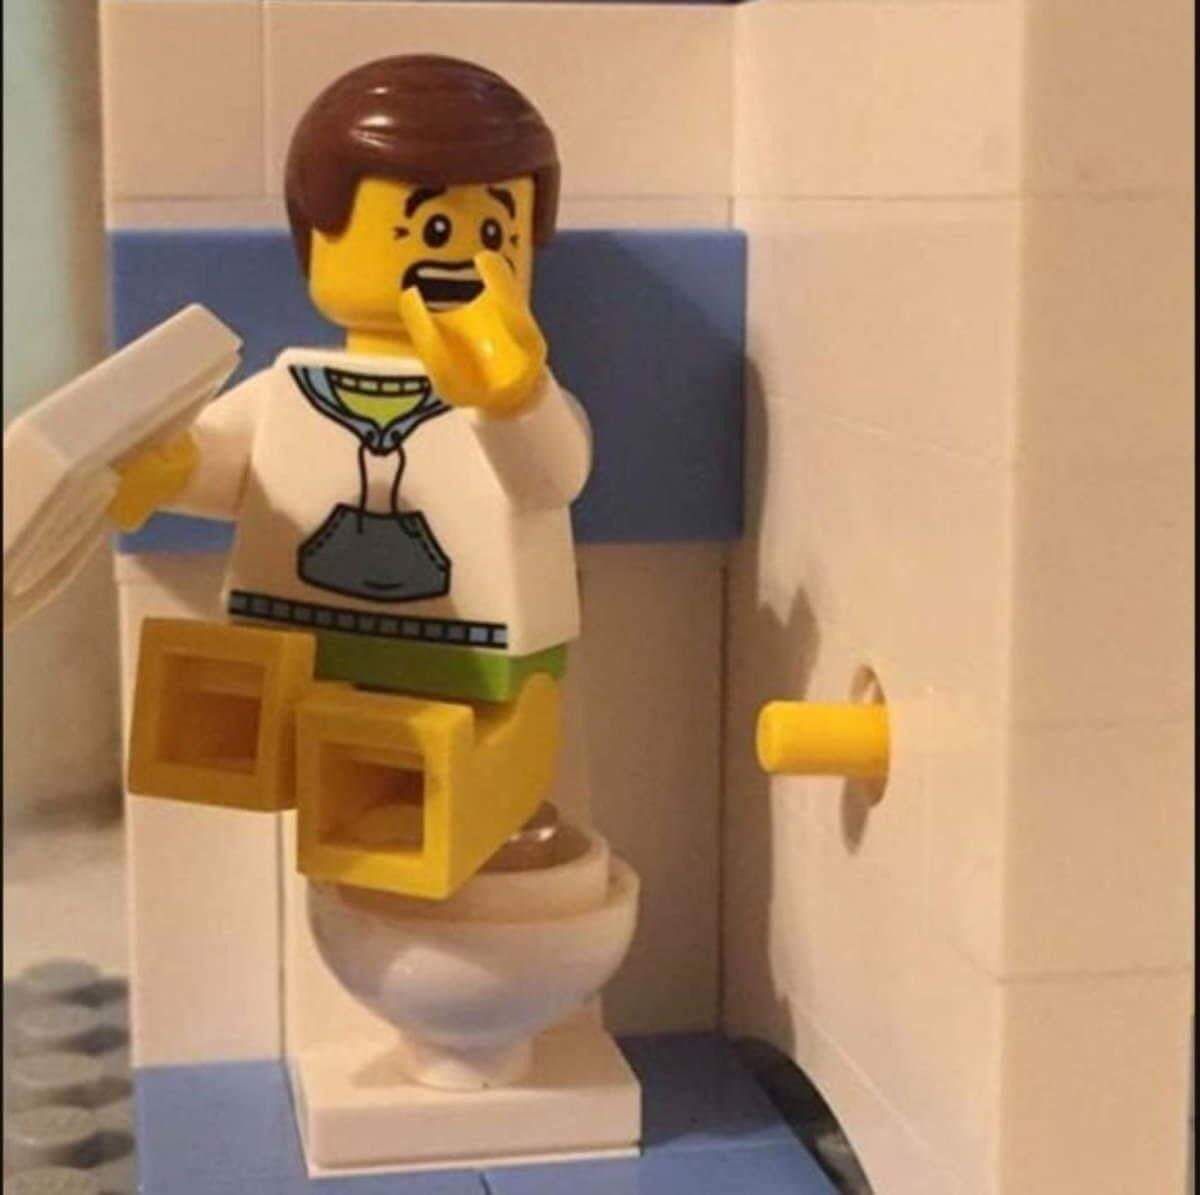 Lego-ohno